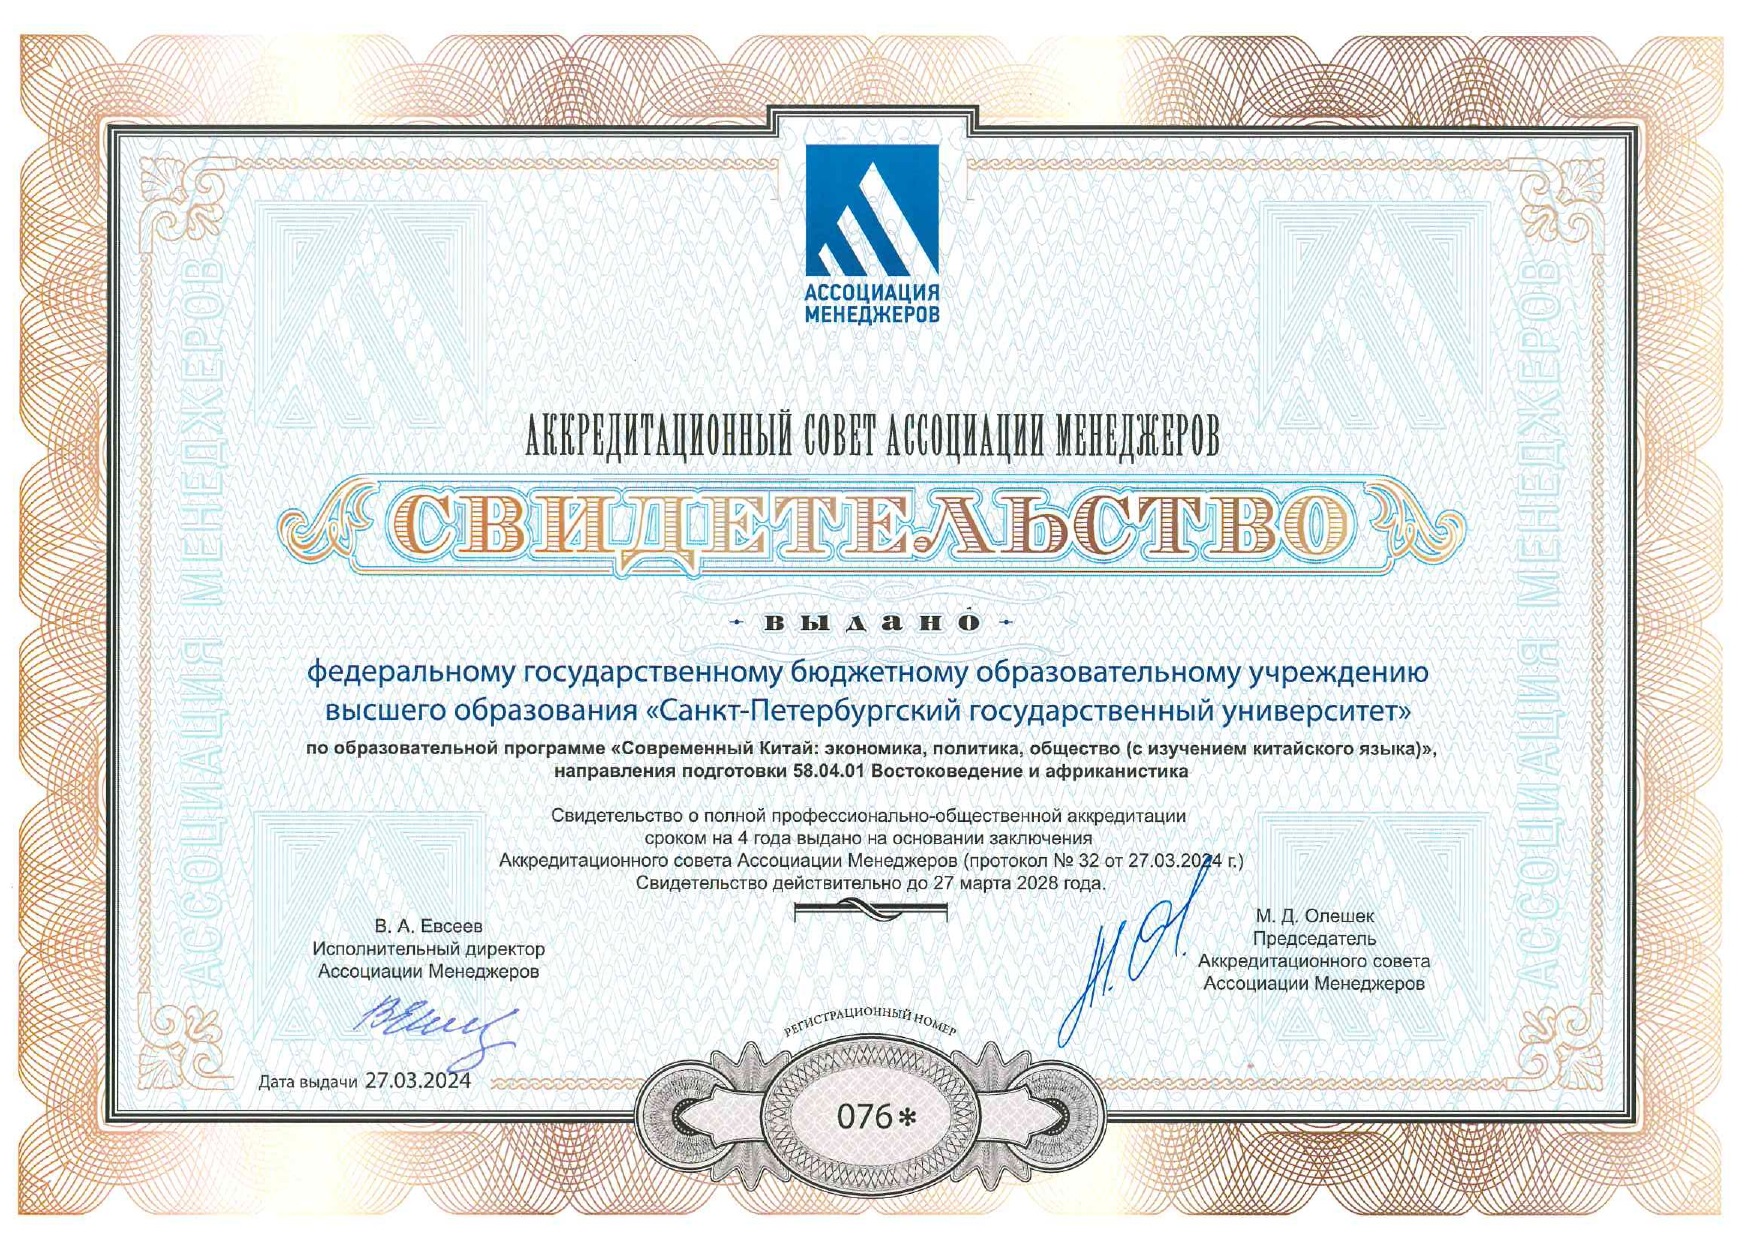 Магистерская программа СПбГУ прошла профессионально-общественную аккредитацию